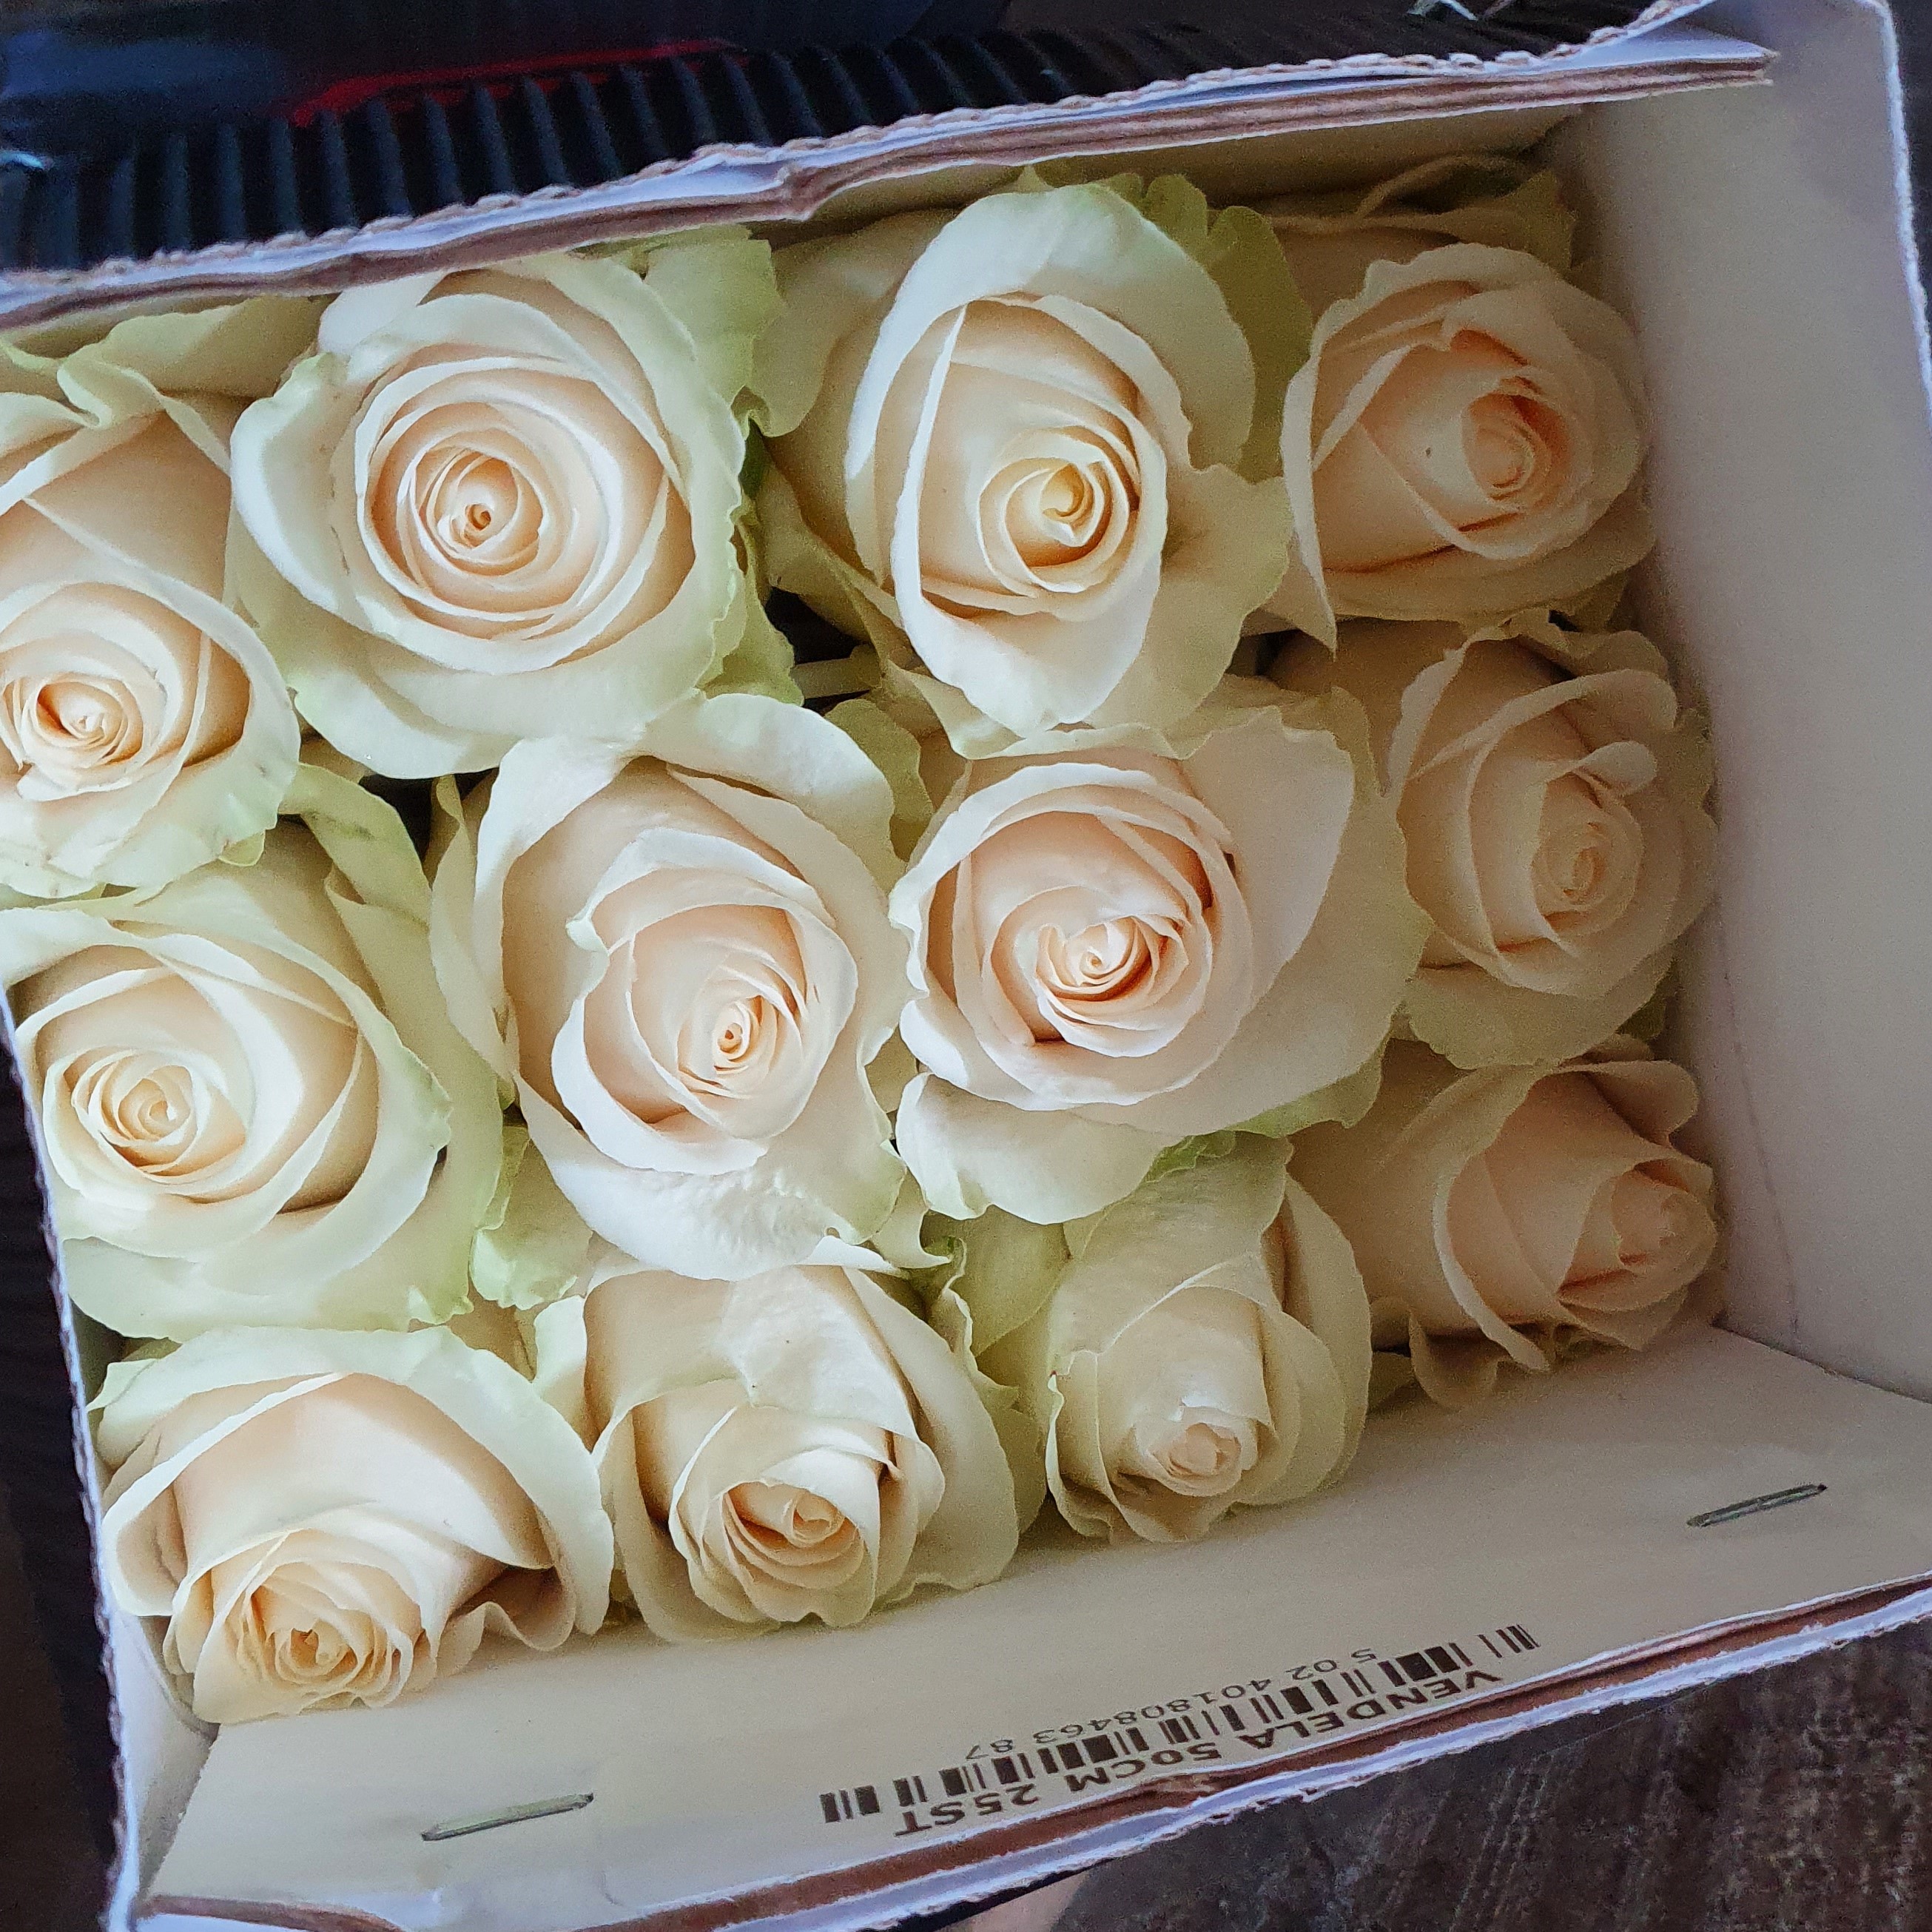 Pqt 25 varas 40 cms. Rosa Blanca | Regalar Flores, Envio de flores, desayunos y regalos a domicilio